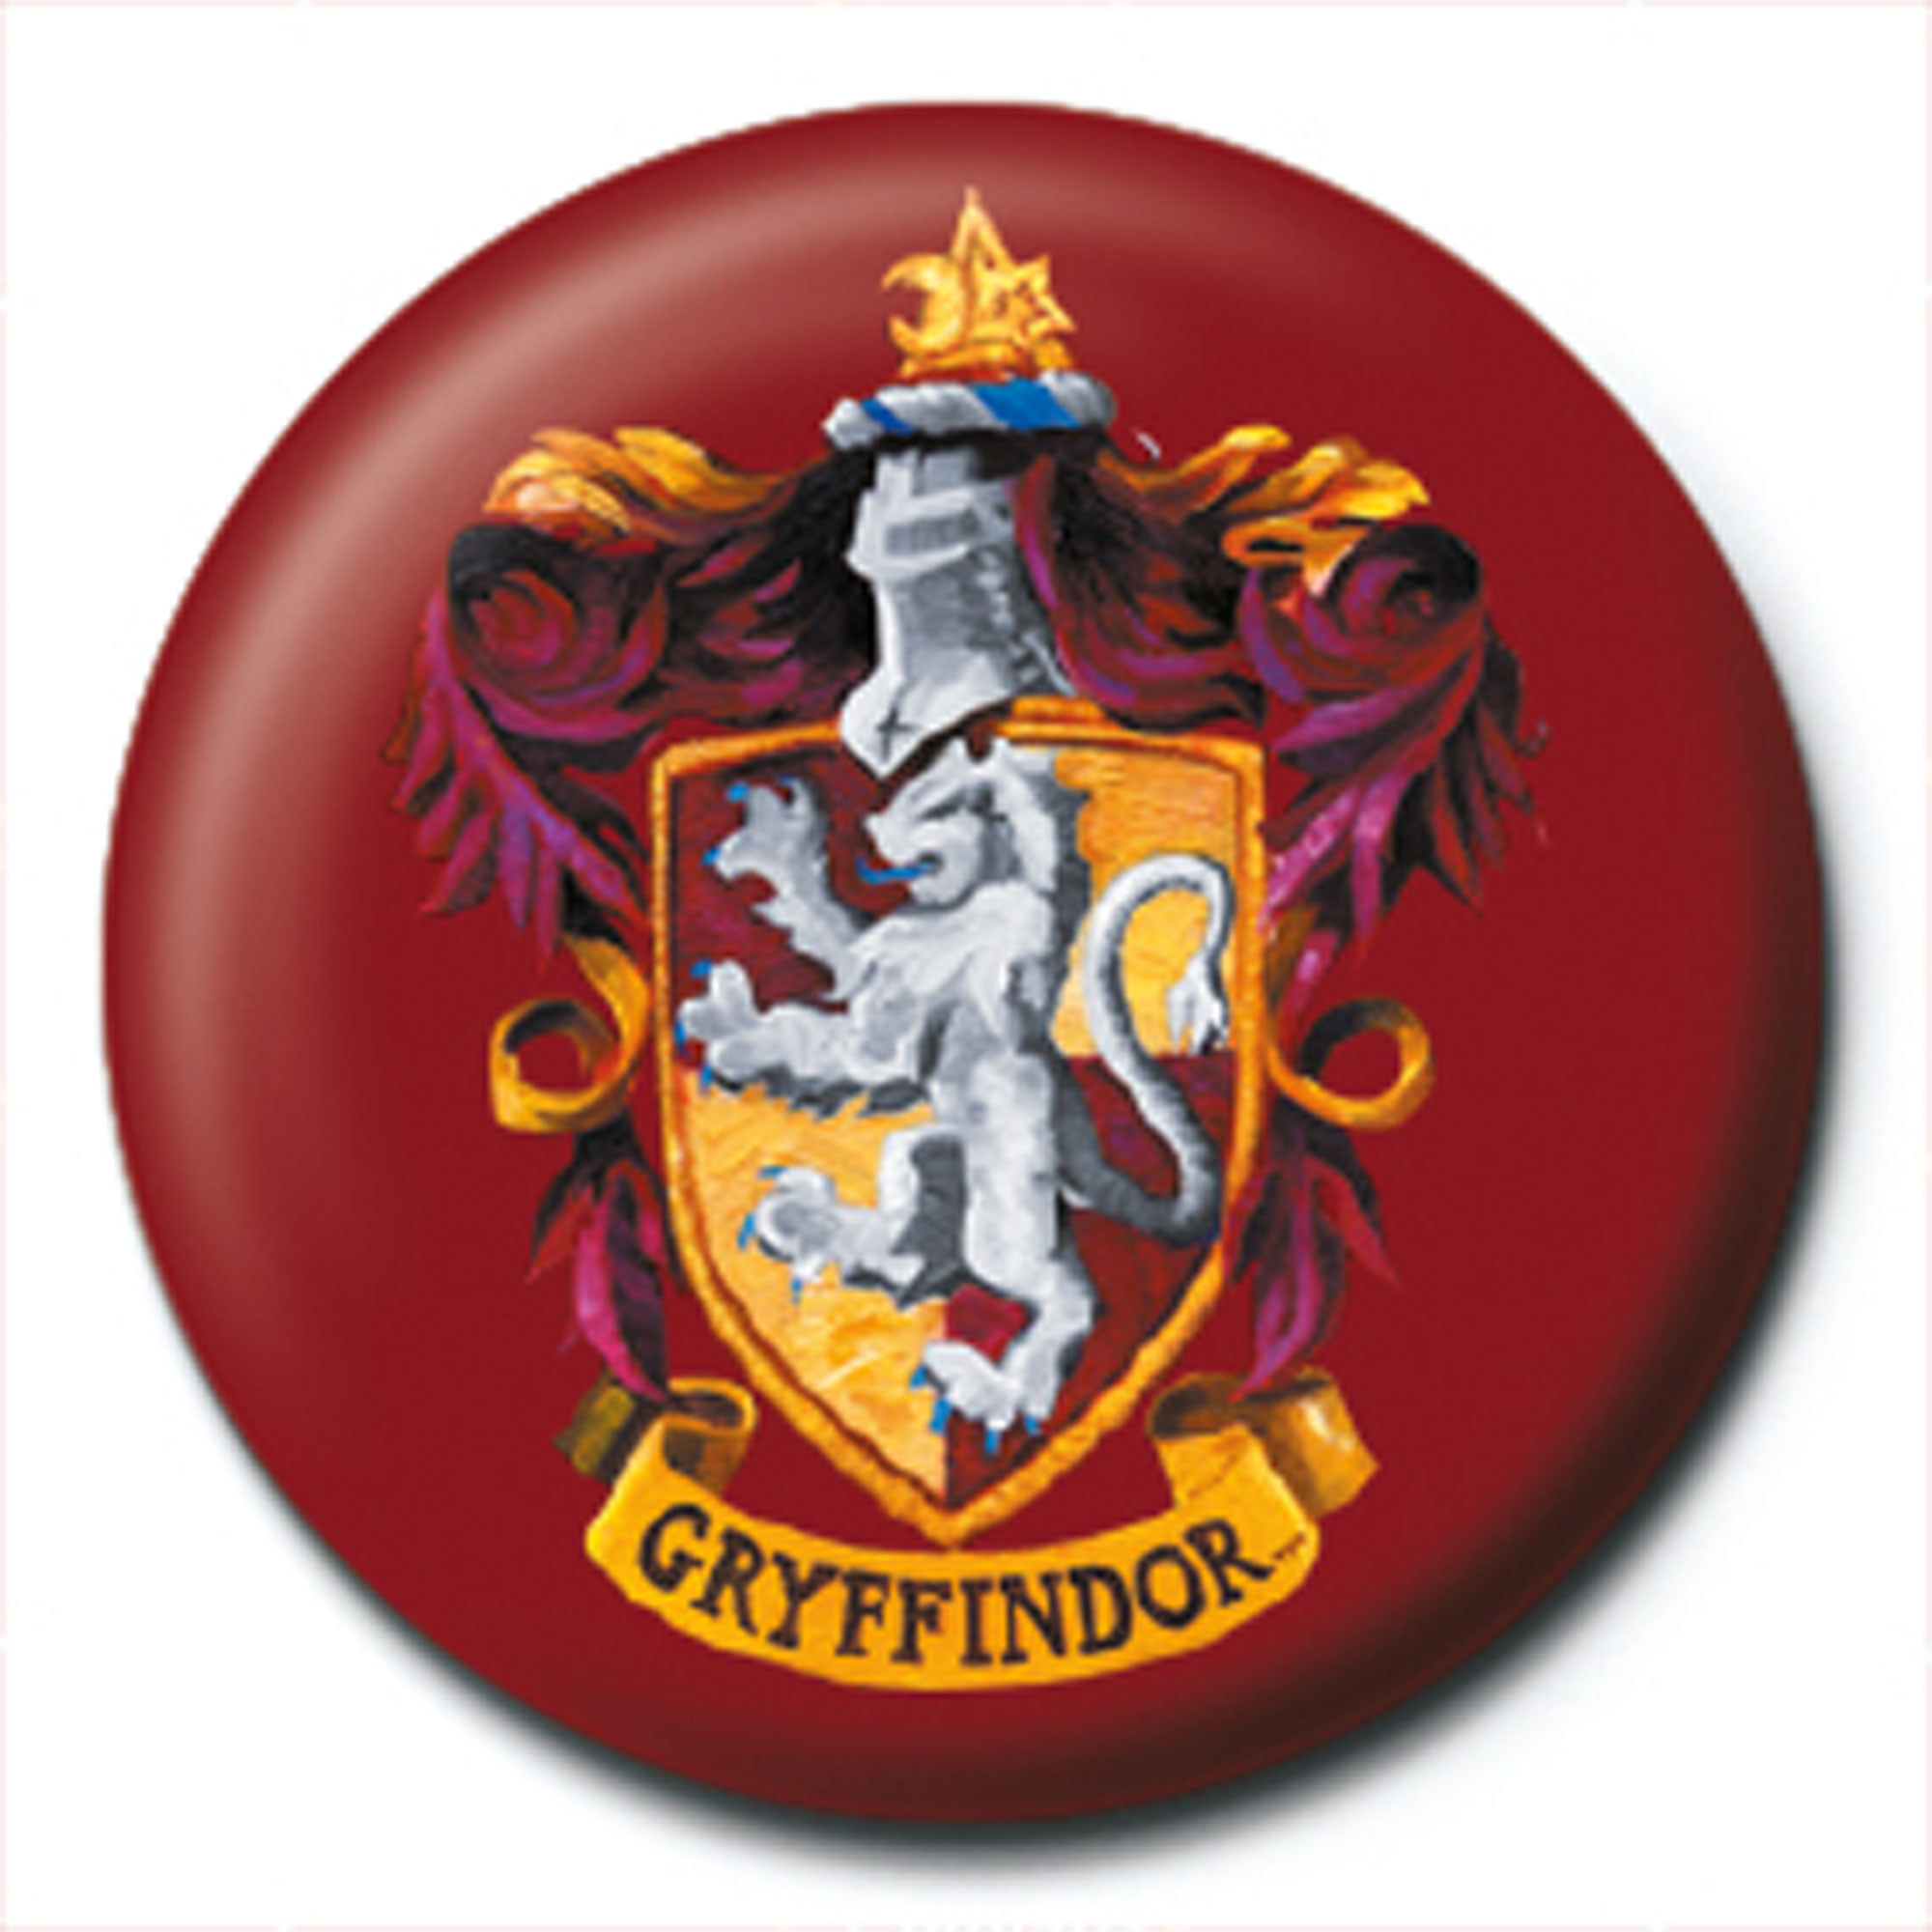 Harry Gryffindor Potter - Crest